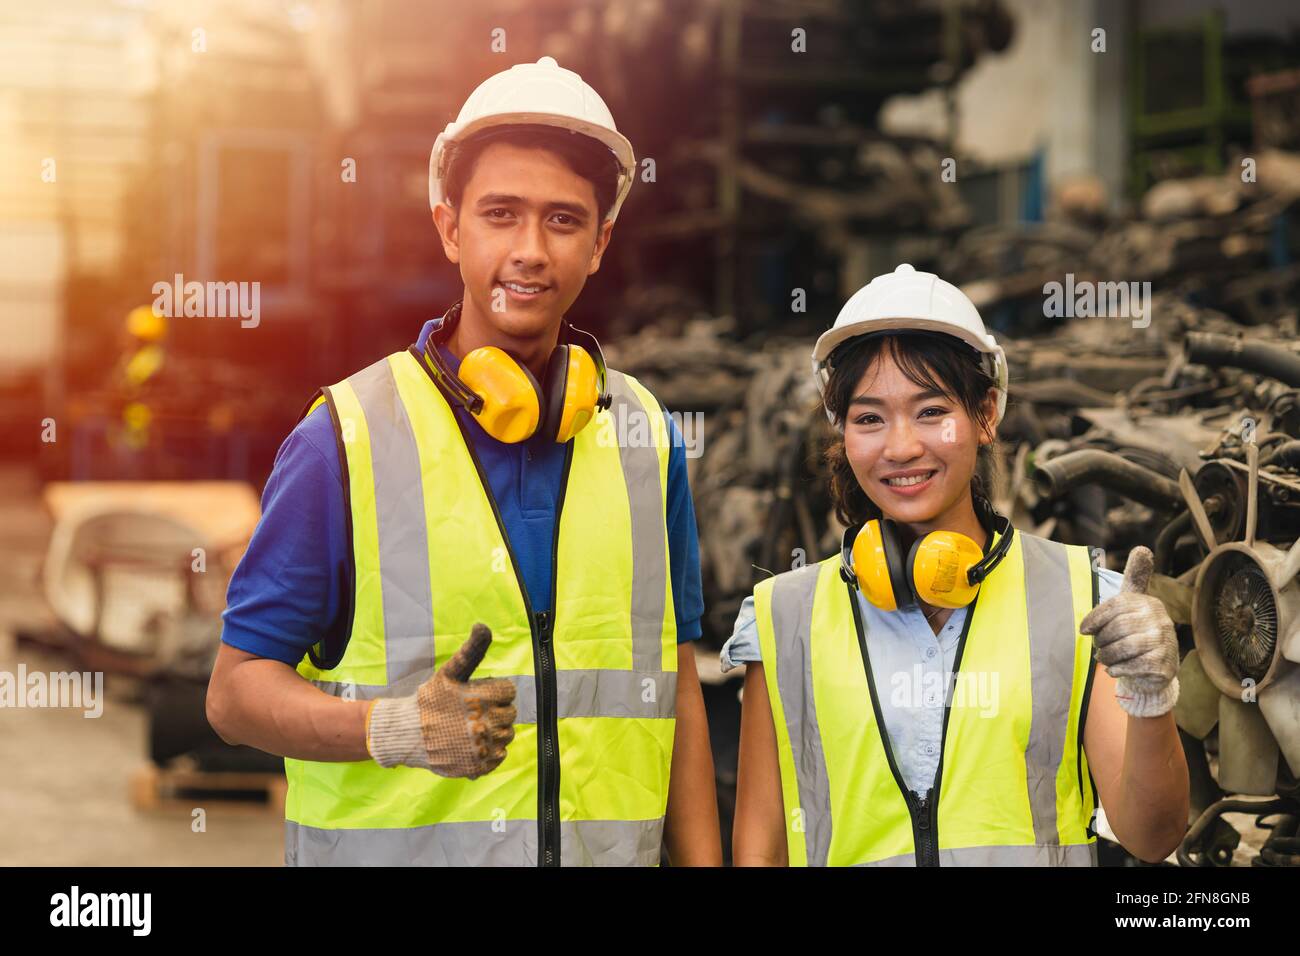 Portrait zwei asiatische junge Männer und Frauen, die arbeiten, Daumen hoch Ein paar Freund Teamingenieur, der zusammen arbeitet, lächelt glücklich Arbeiten in der Fabrikindustrie Stockfoto